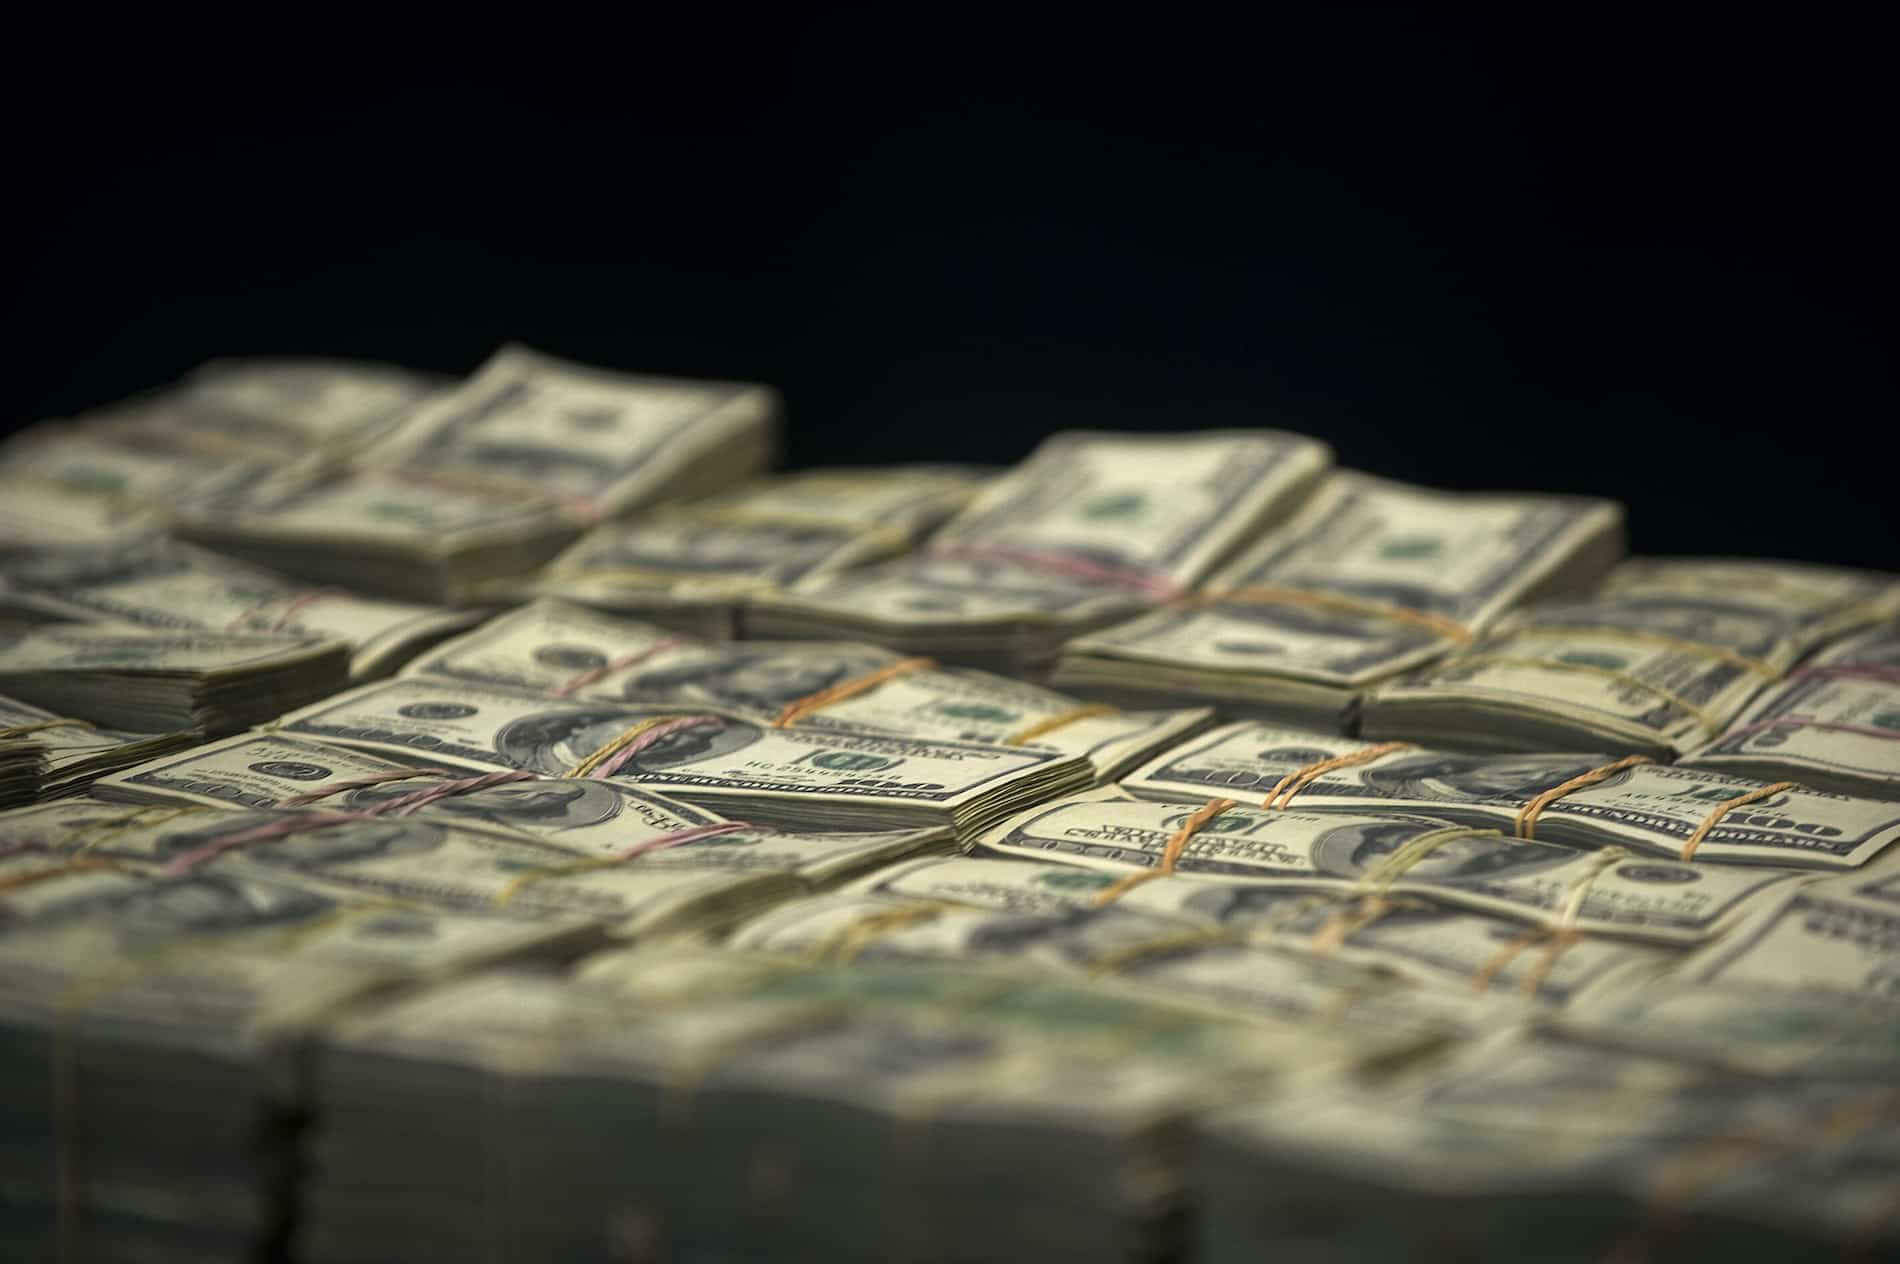 Abundancia de dólares no proviene de capital golondrina, opinan expertos: “No hay condiciones”